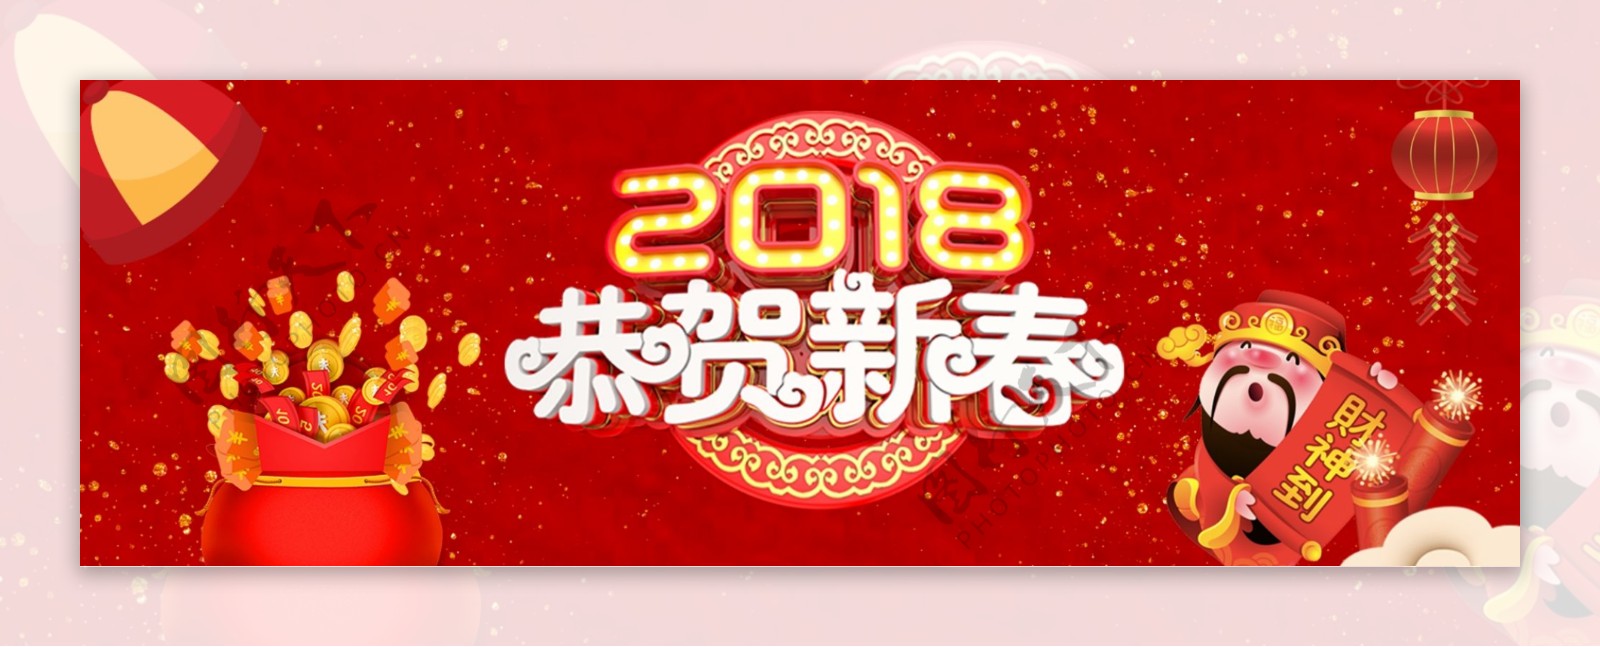 2018福袋节日促销海报